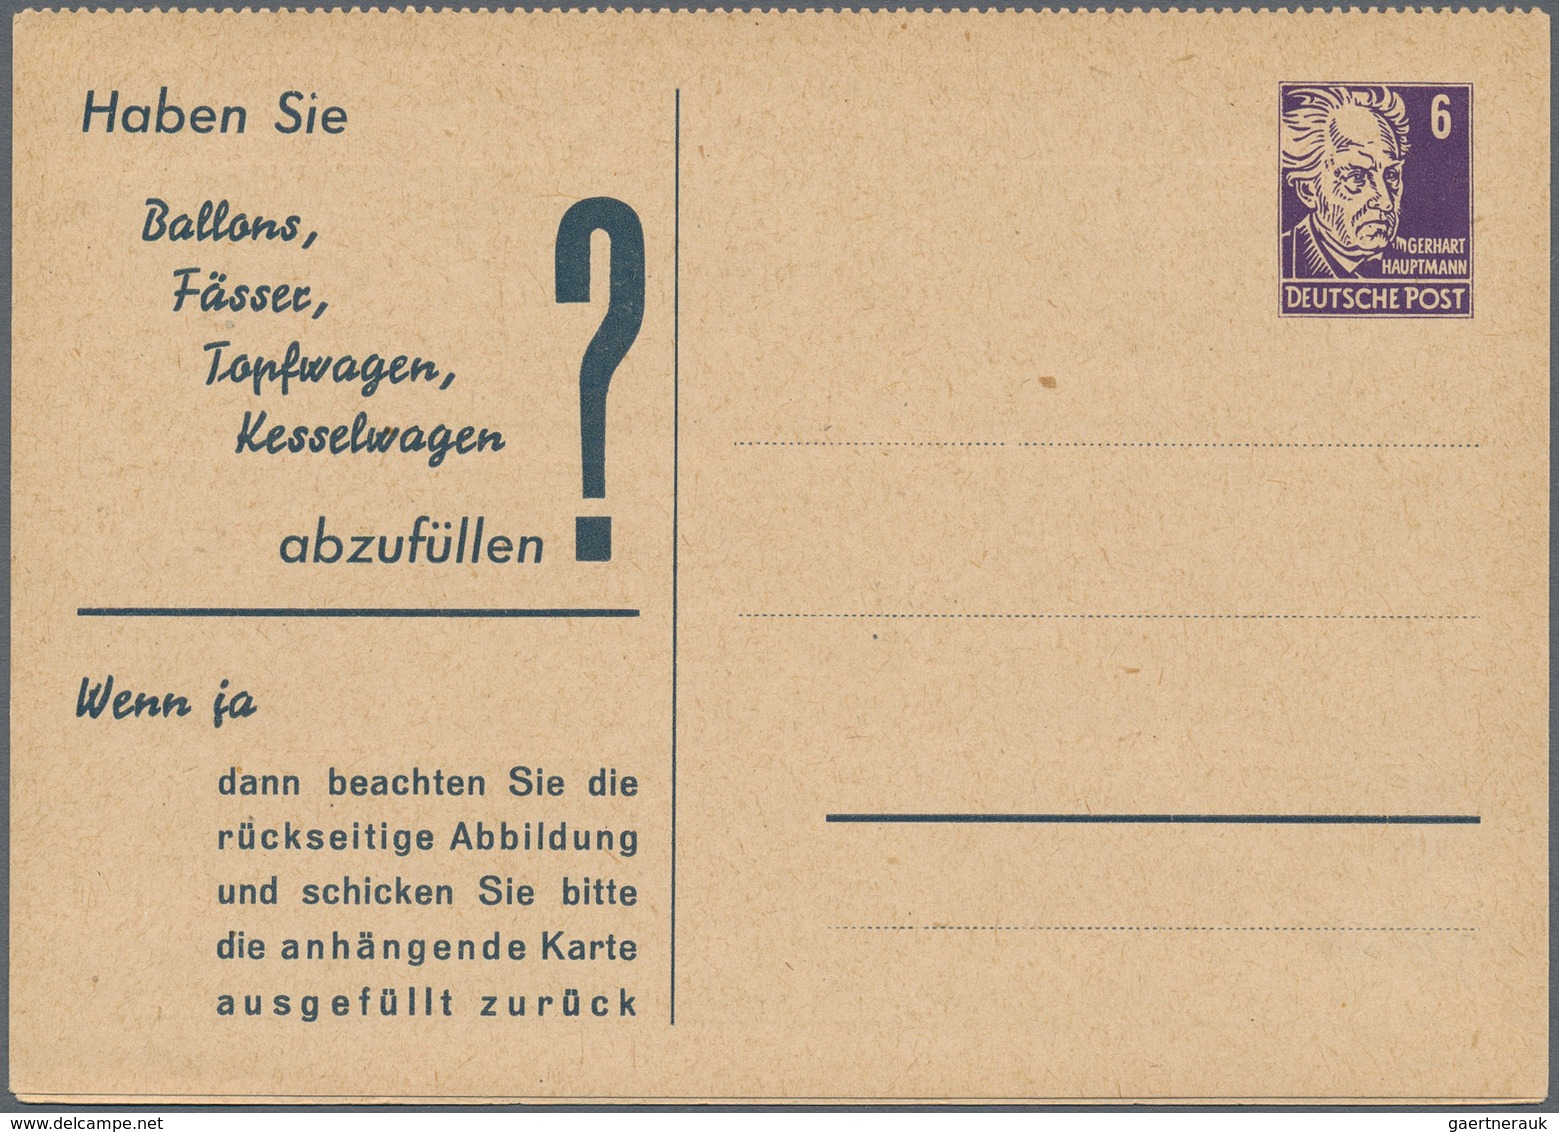 Sowjetische Zone und DDR: 1945-1990, Posten mit über 500 Briefen, Belegen und Ganzsachen, dabei auch